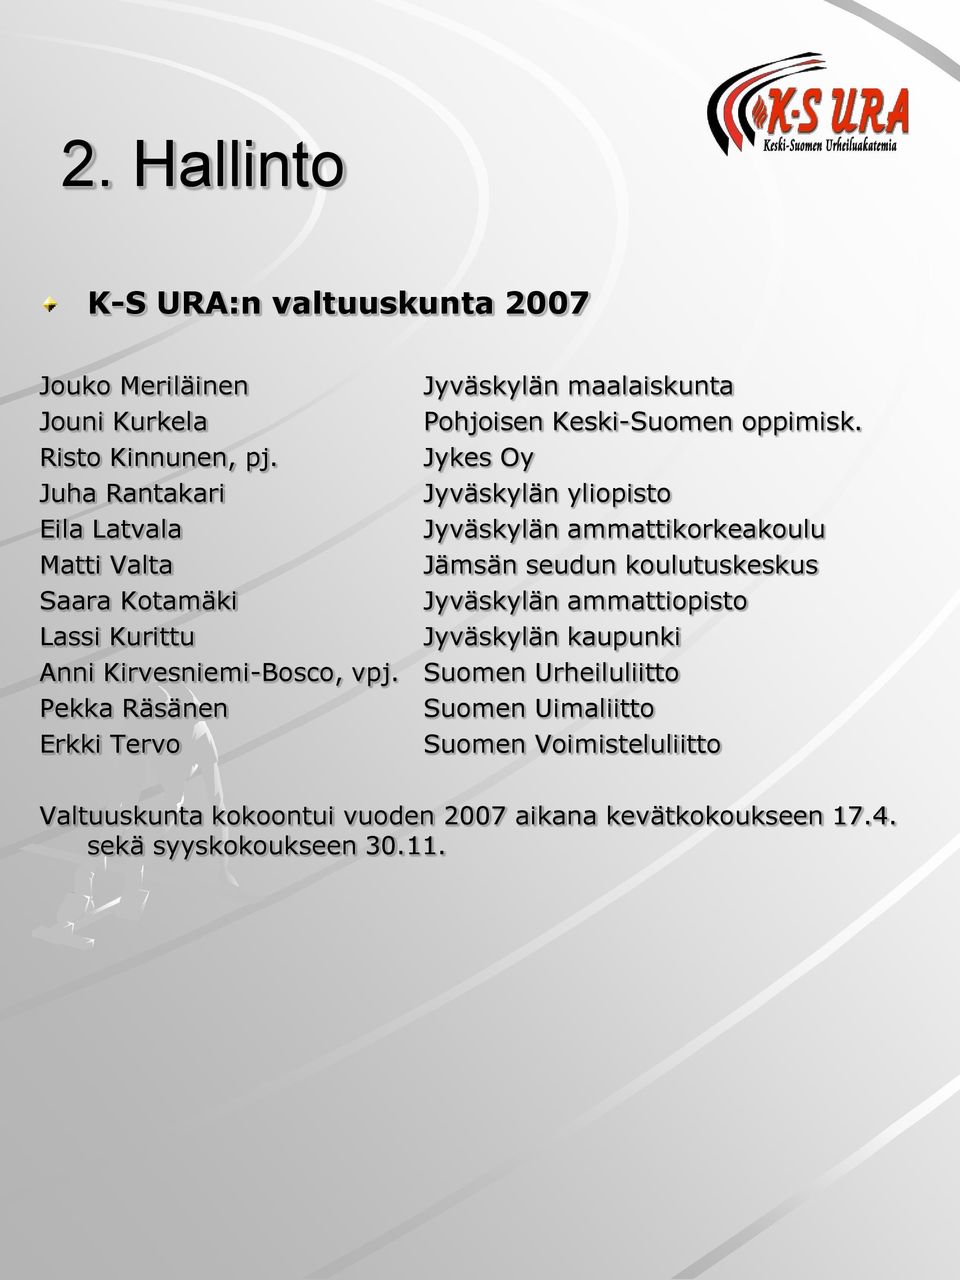 Pekka Räsänen Erkki Tervo Jyväskylän maalaiskunta Pohjoisen Keski-Suomen oppimisk.